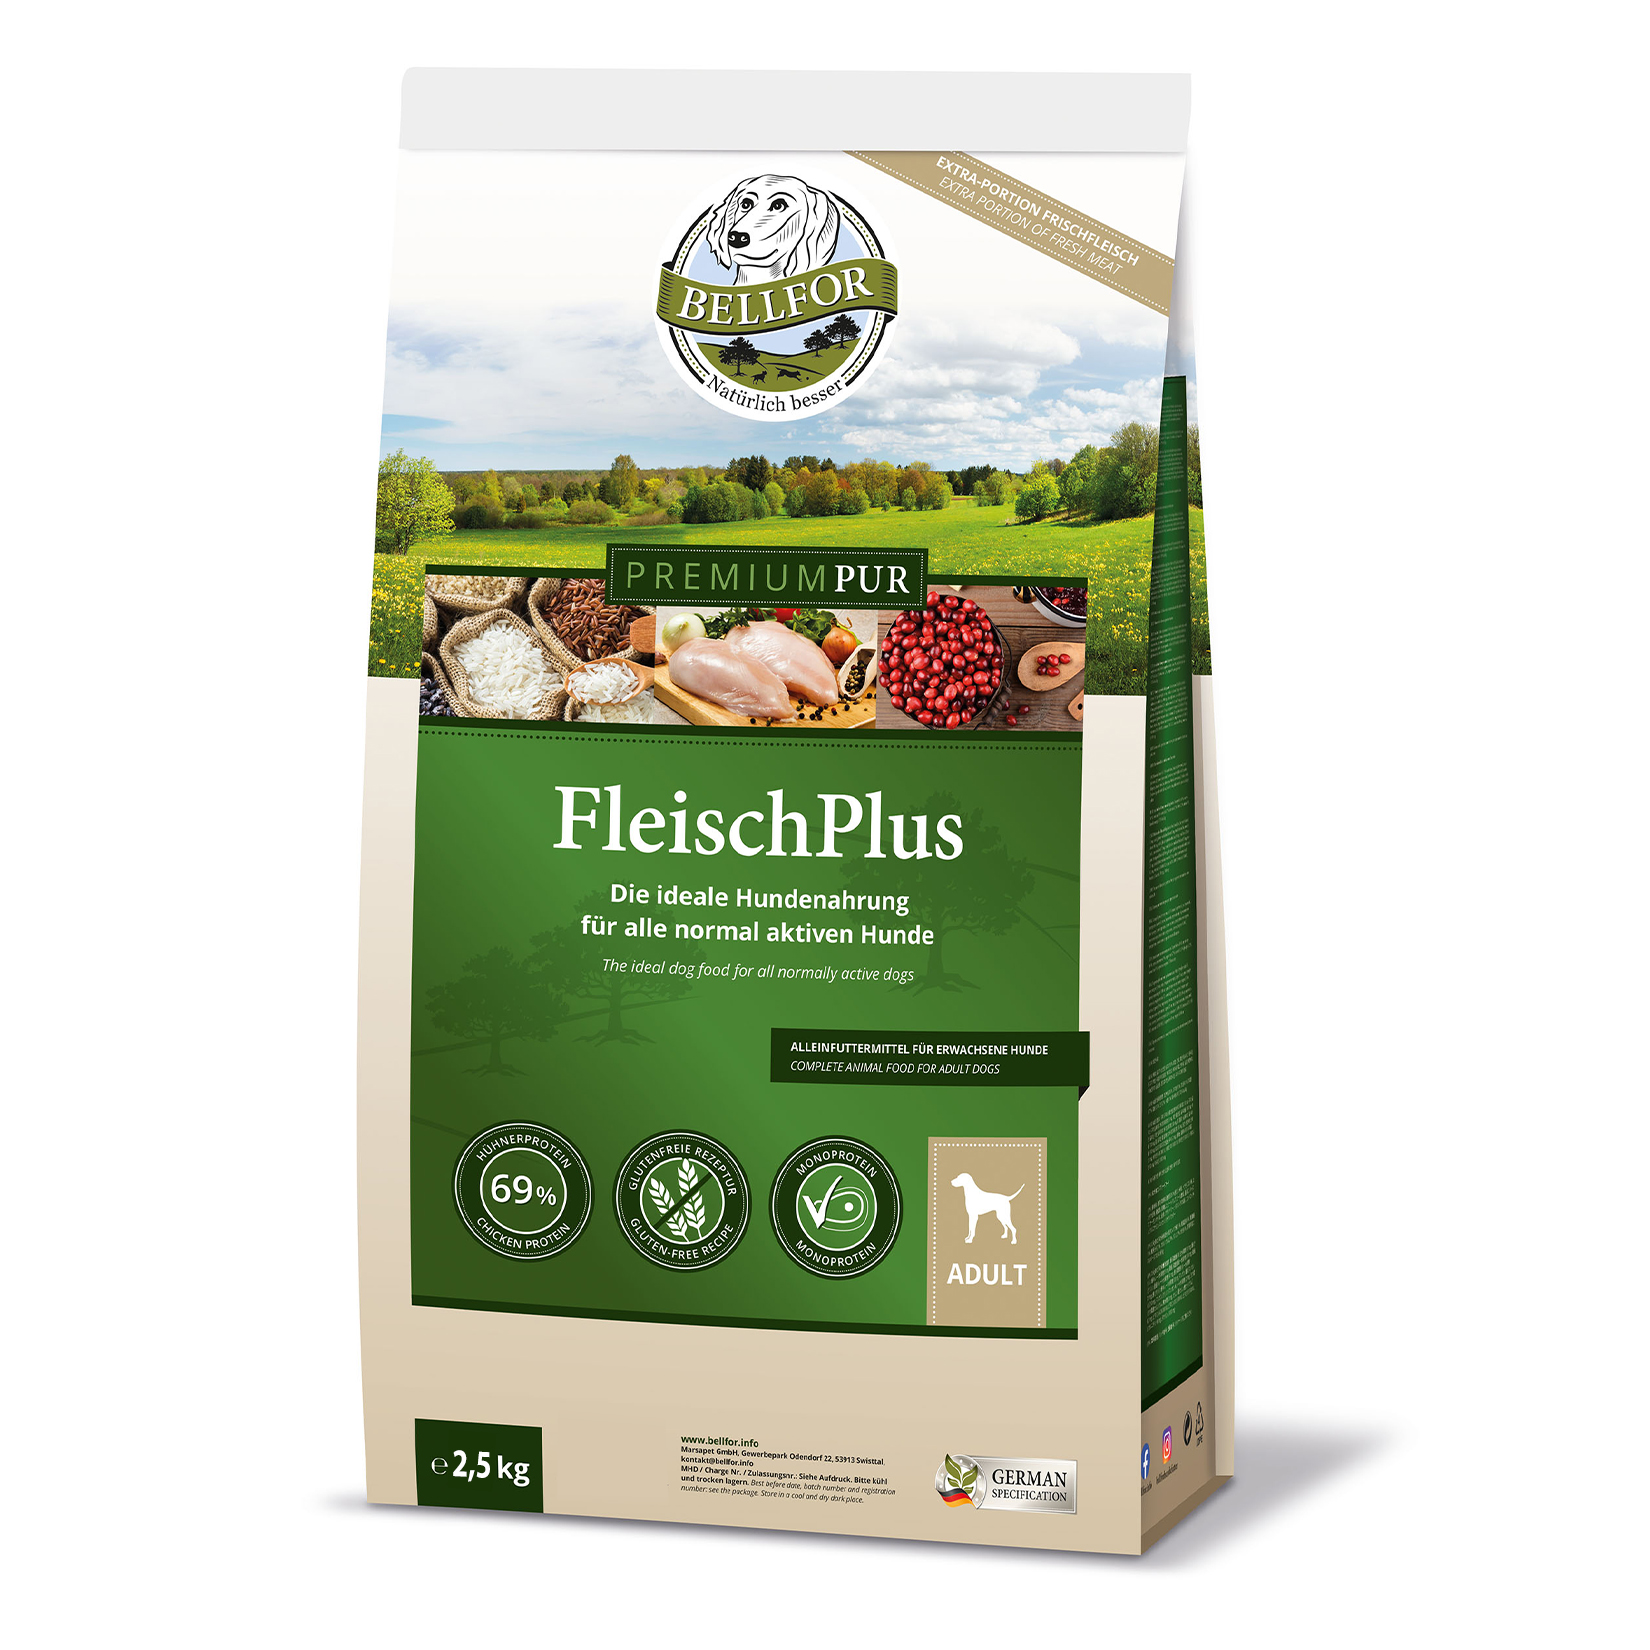 Nourriture pour chien sans gluten avec de la viande de poulet - premium pur fleischplus - 2,5 kg